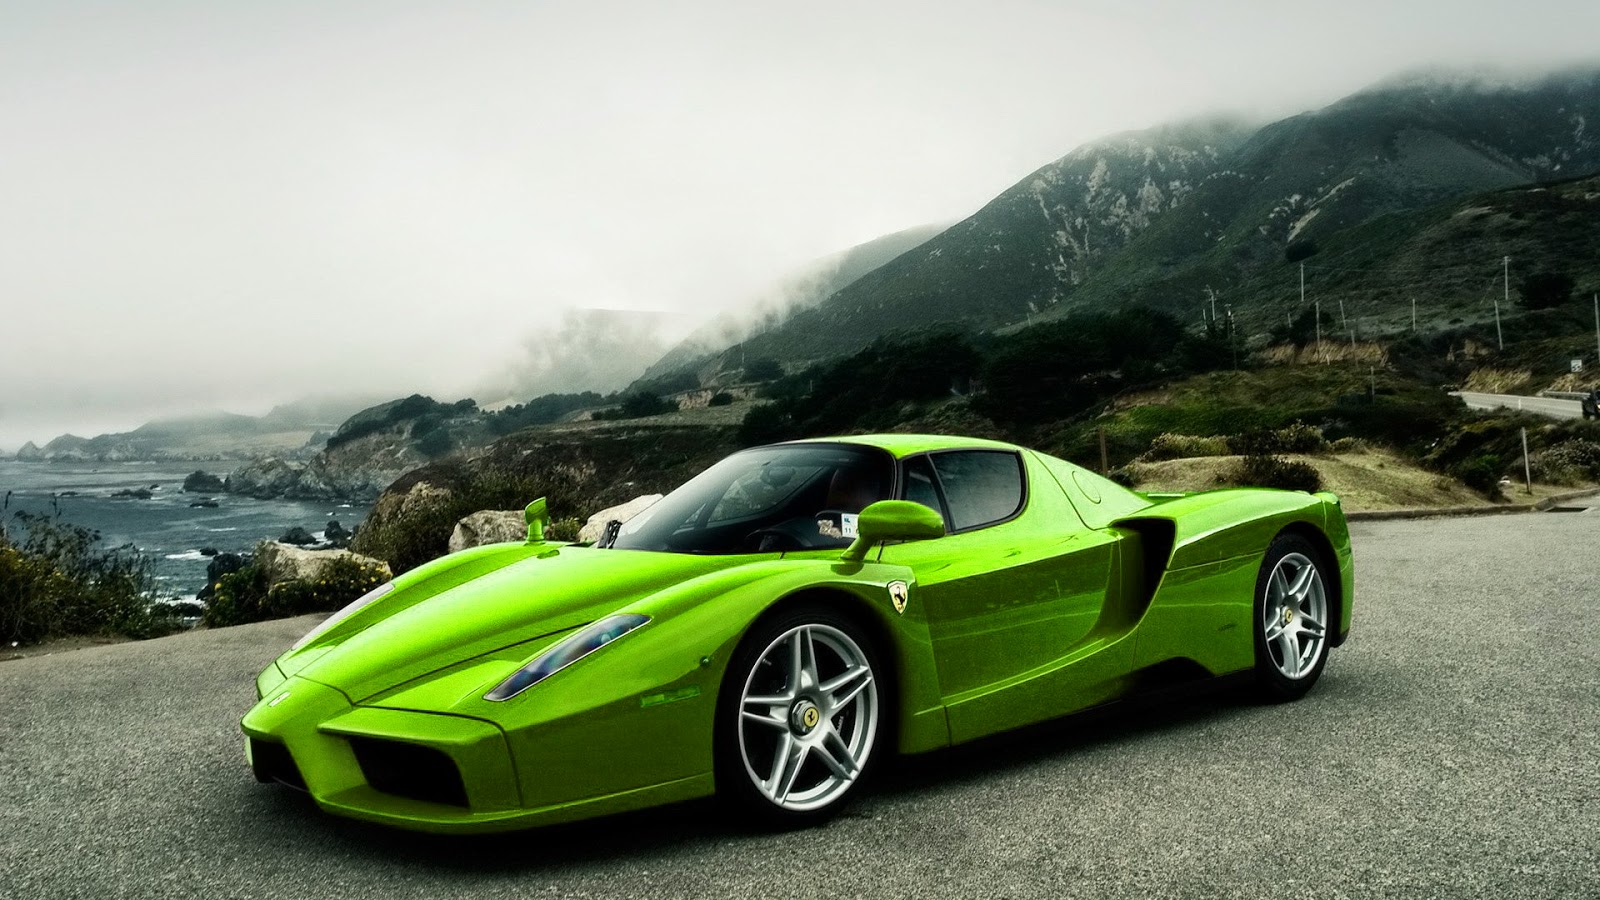  Green Ferrari  Full HD Wallpaper Galery Car Wallpaper